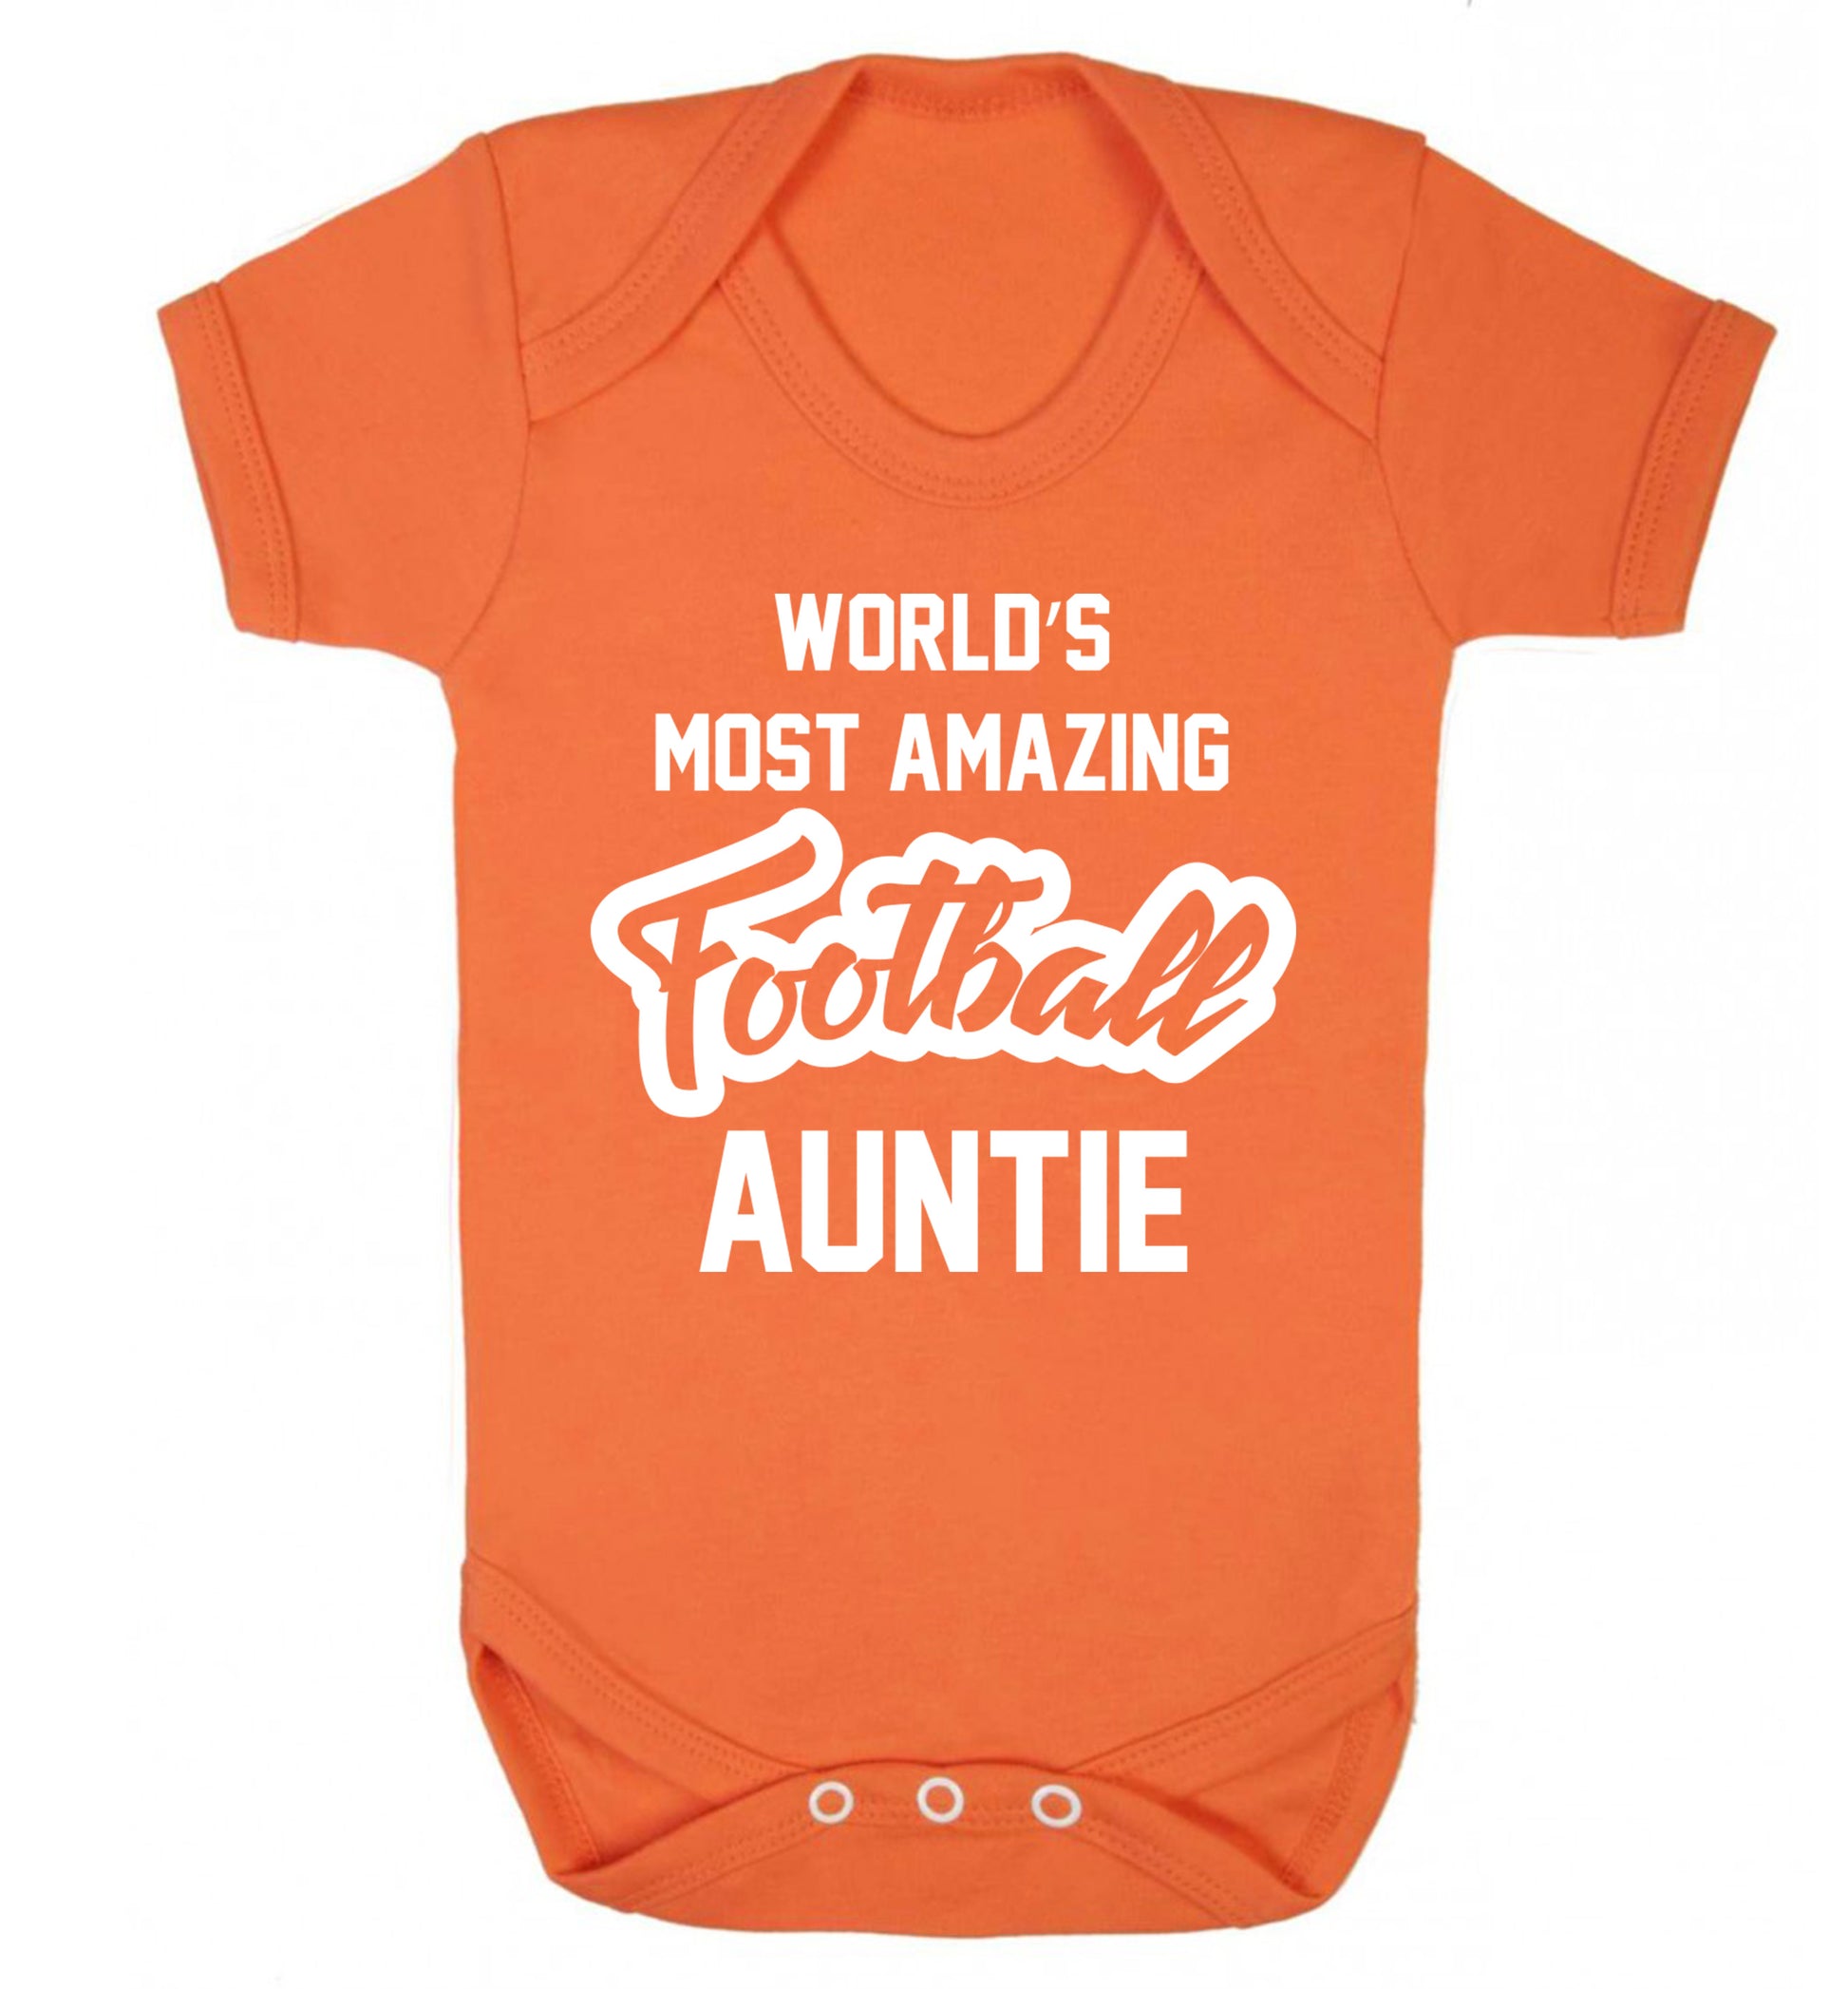 Worlds most amazing football auntie Baby Vest orange 18-24 months